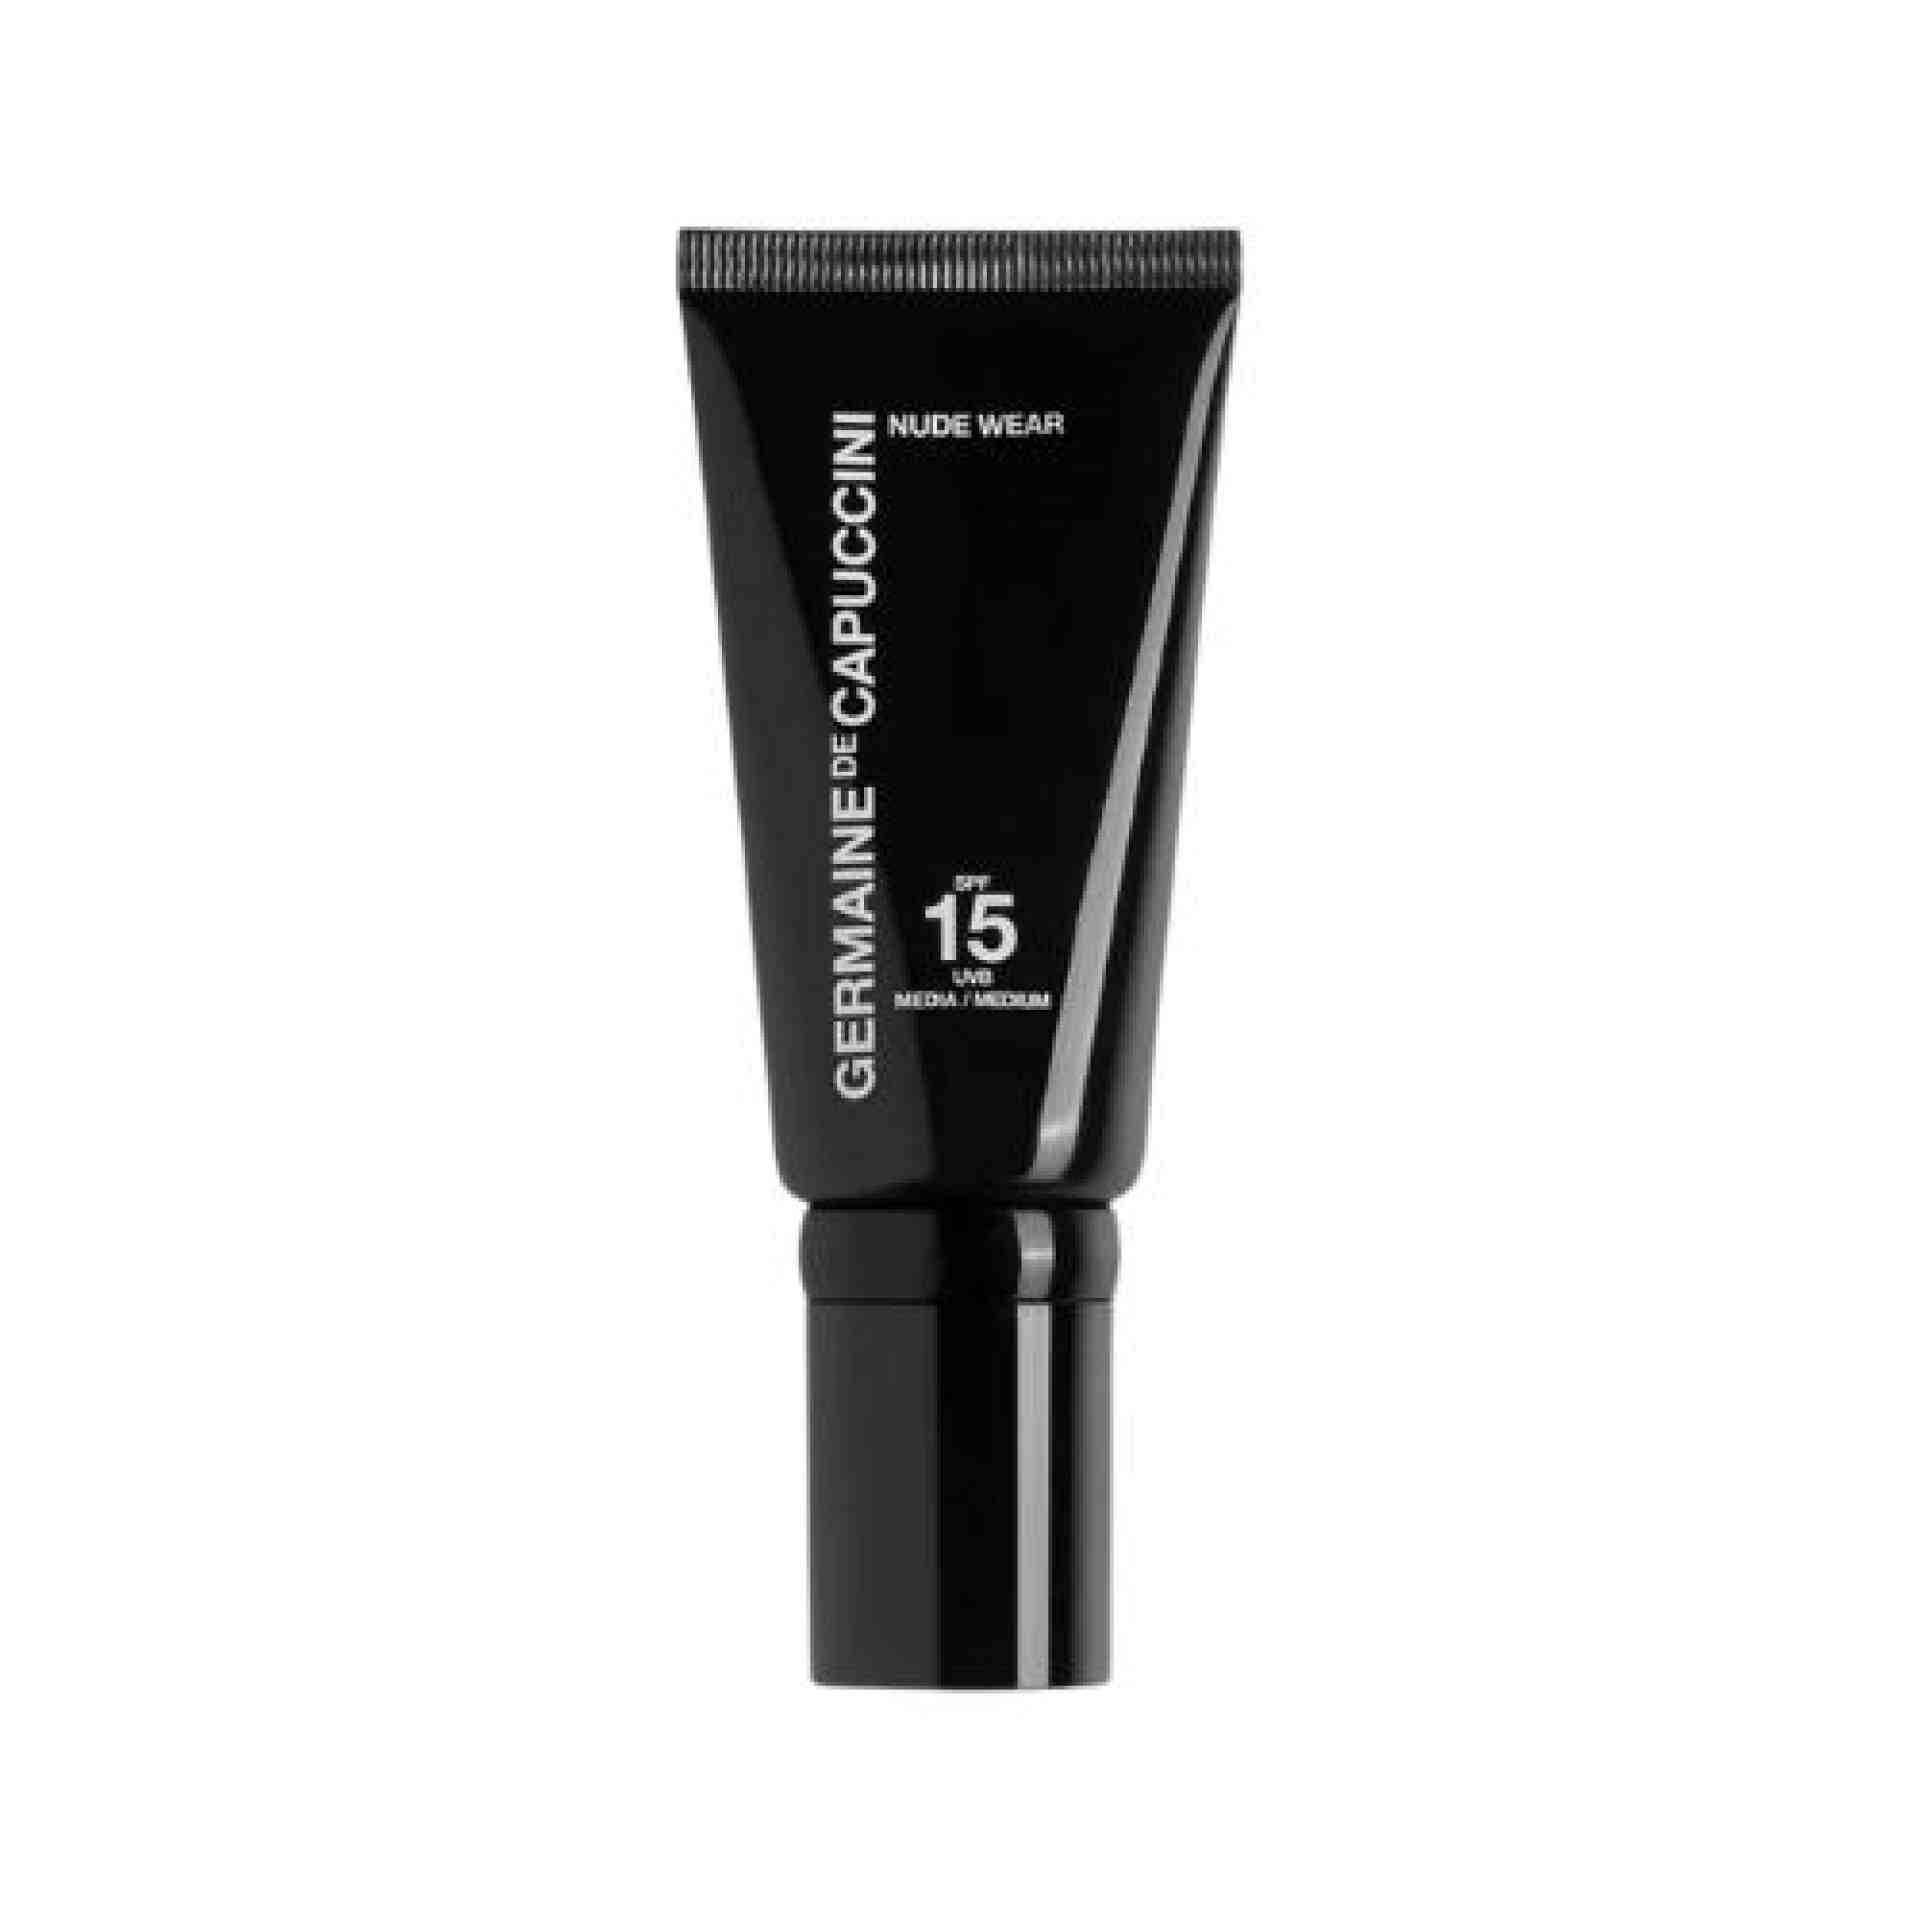 Nude Wear SPF15 30ml - Maquillaje de rostro - Germaine de Capuccini ®